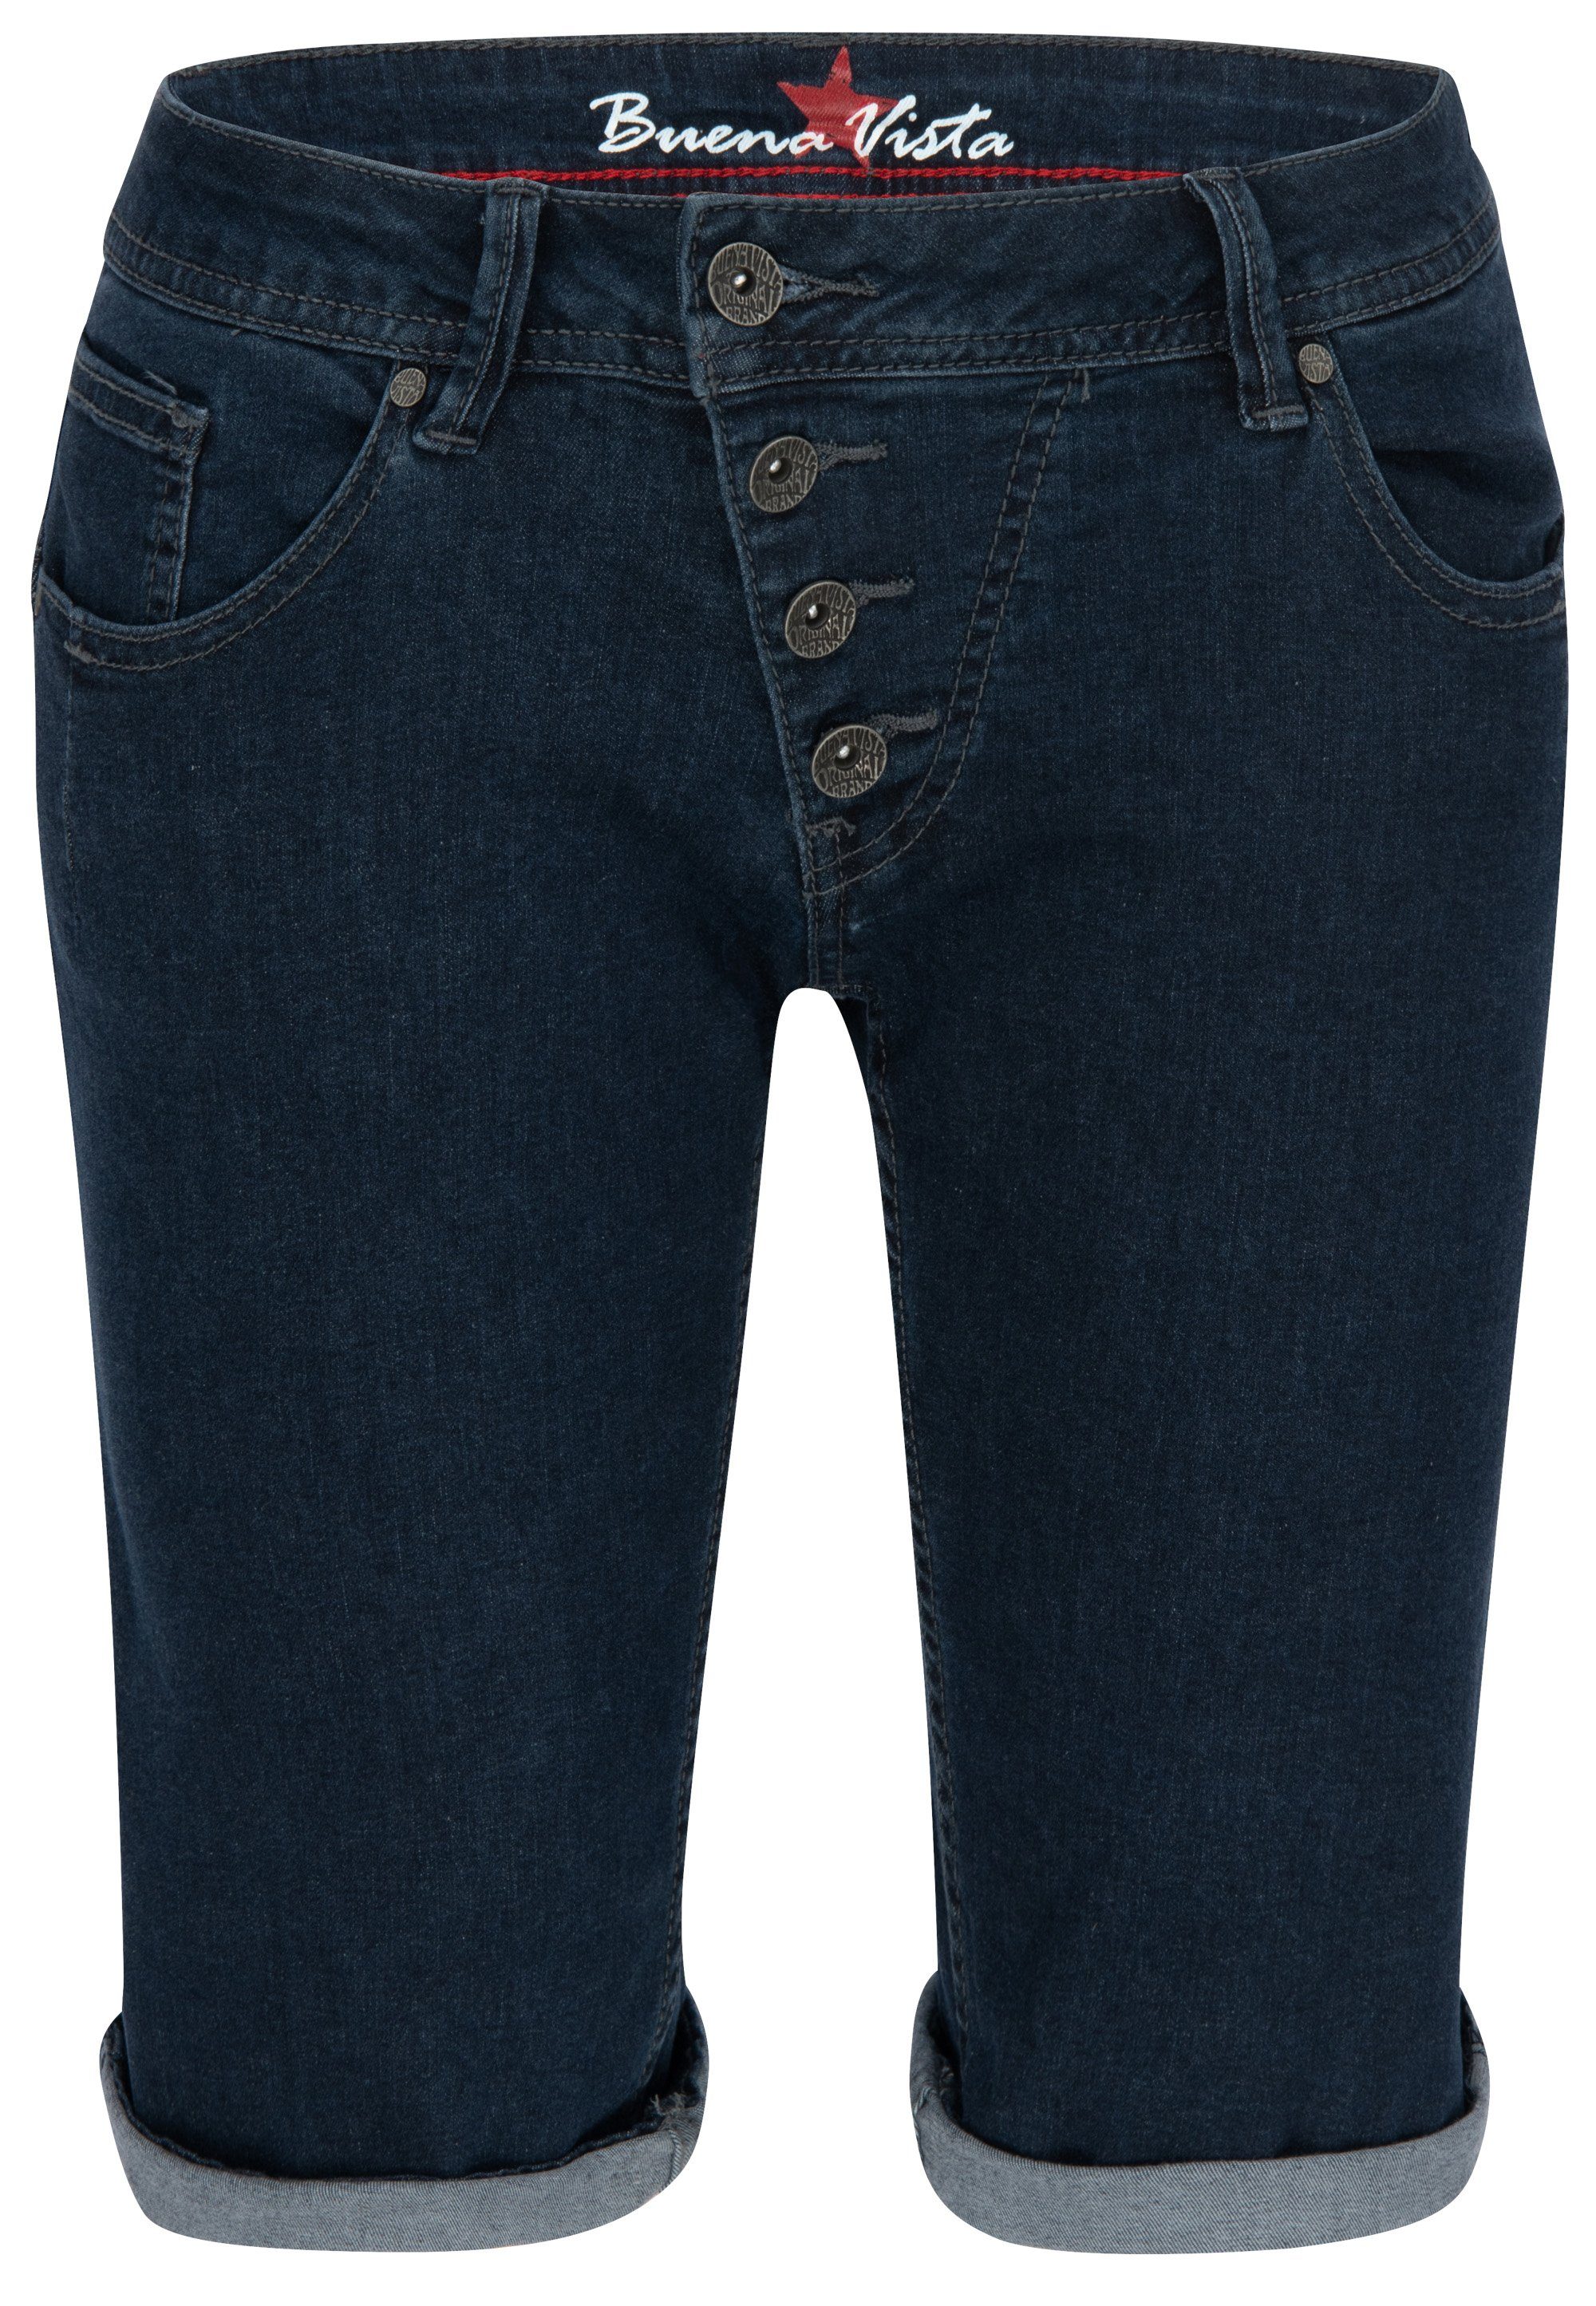 VISTA 212.1933 Vista MALIBU BUENA SHORT Stretch-Jeans blue 2104 - Buena J5025 raw Denim Stretch